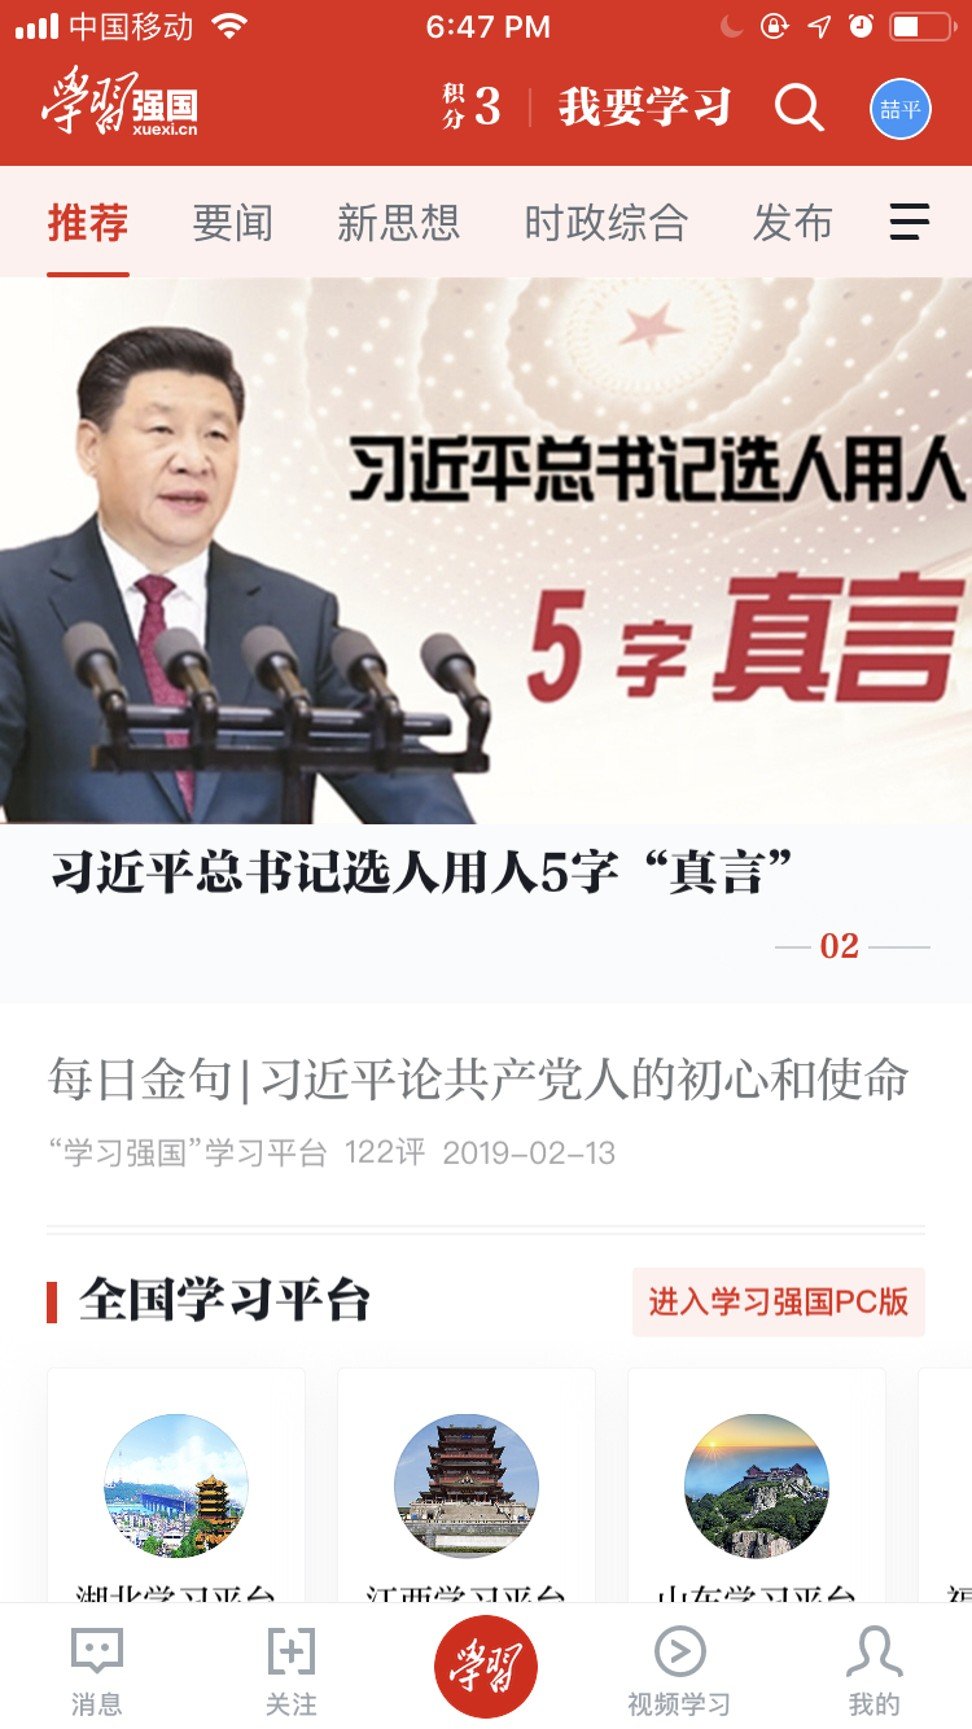 A screenshot of the Xuexi Qiangguo app, which has become a popular propaganda tool in China for teaching Xi Jinping Thought across the country.